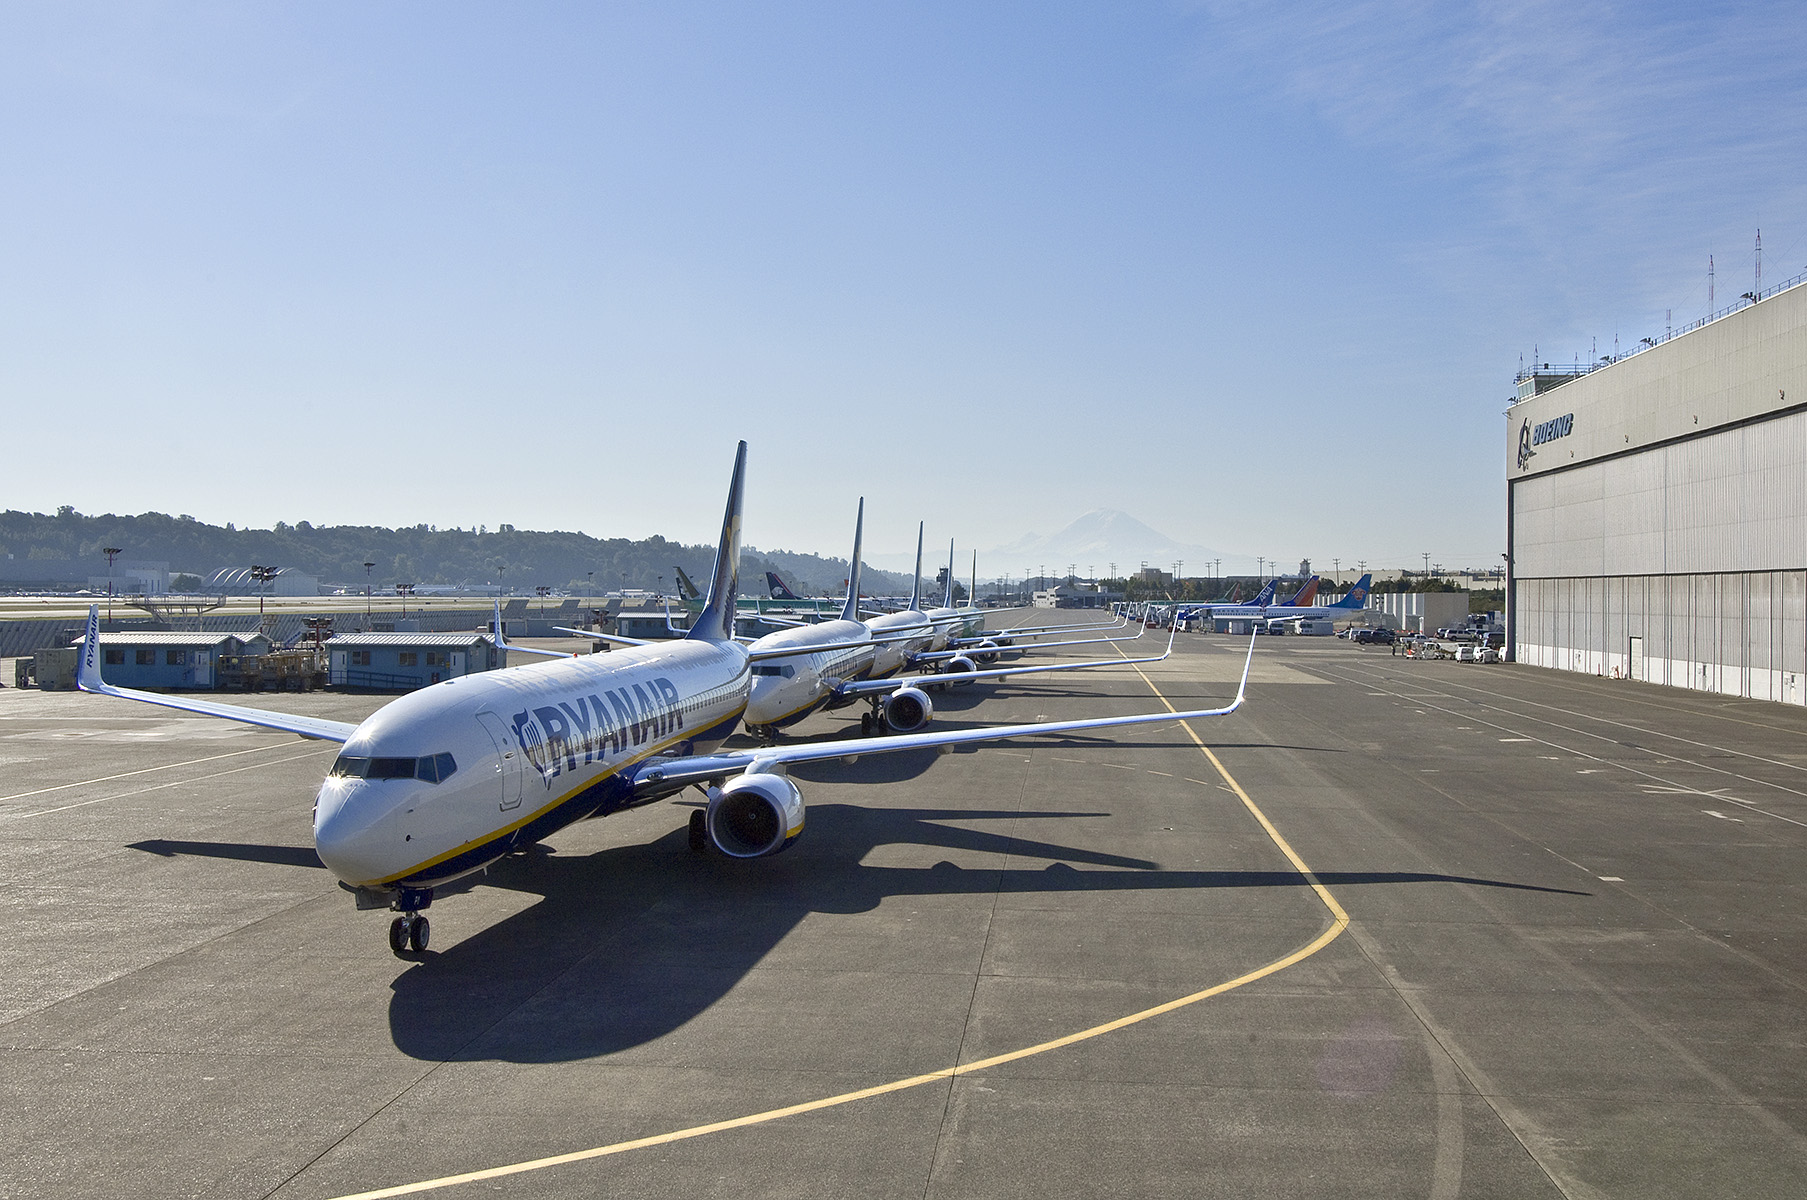 Le Trafic De Ryanair En Octobre Augmente De 8% À 11,8m Clients